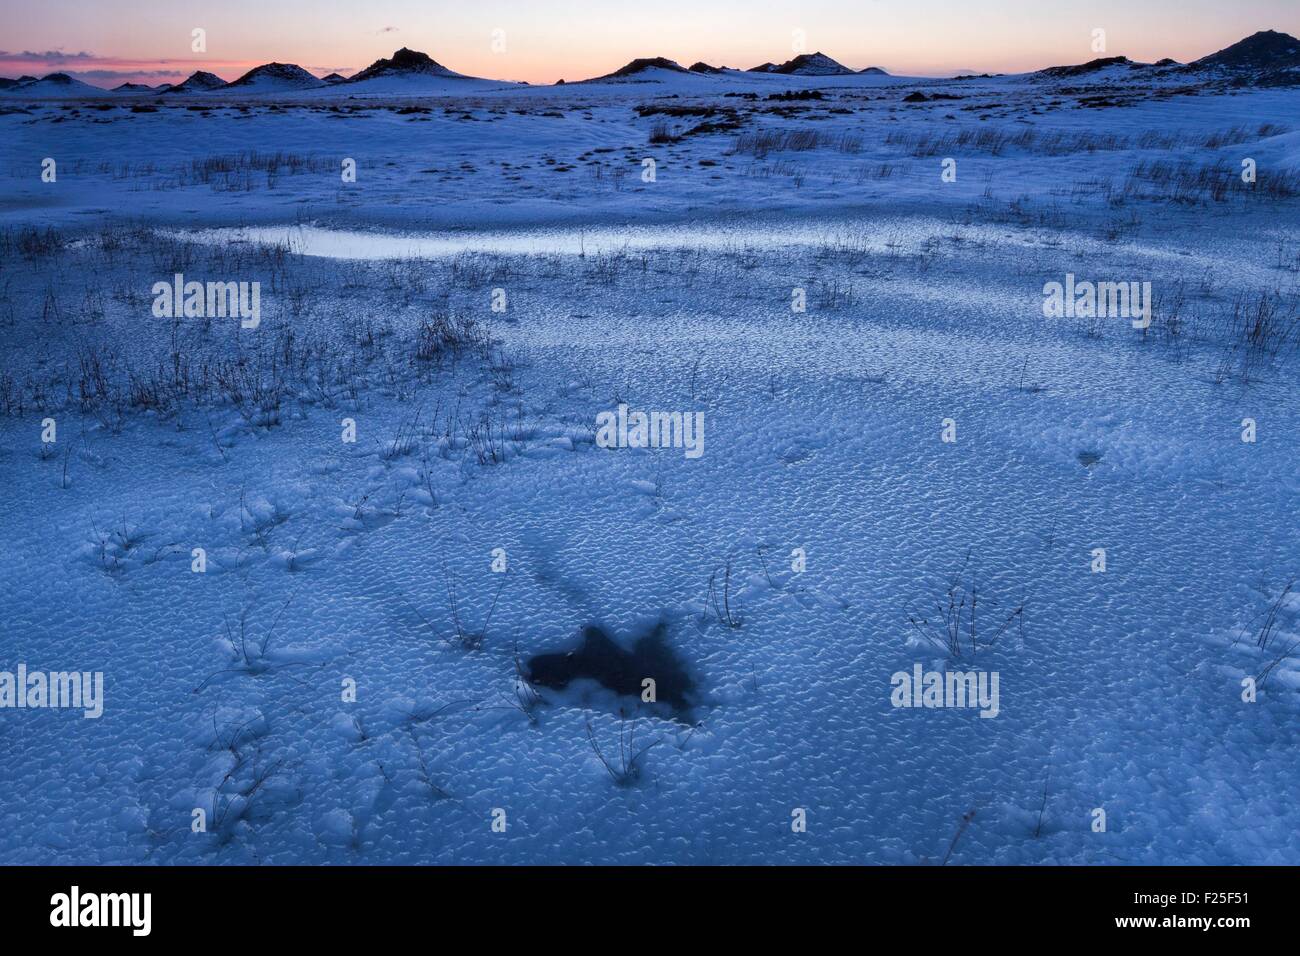 Iceland, South coast, Myrdalssandur, South land of Iceland under the ice at sunrise Stock Photo